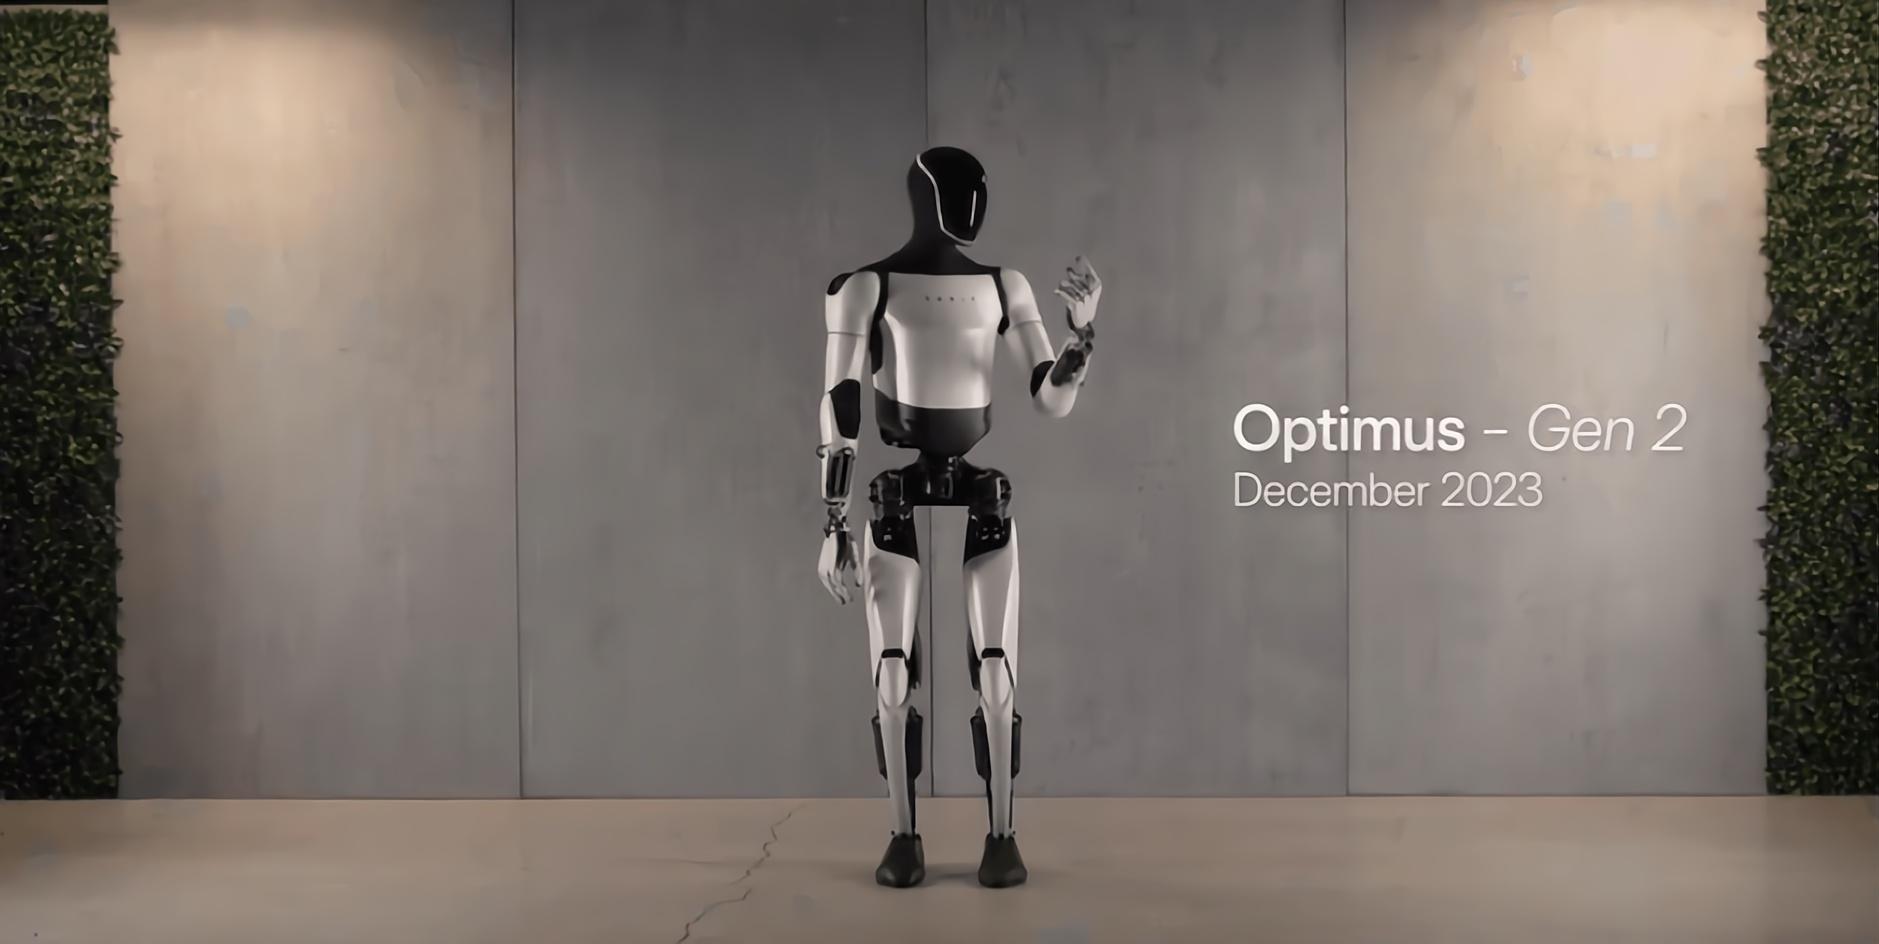 特斯拉Optimus第二代机器人（Gen 2）将于2023年12月发布